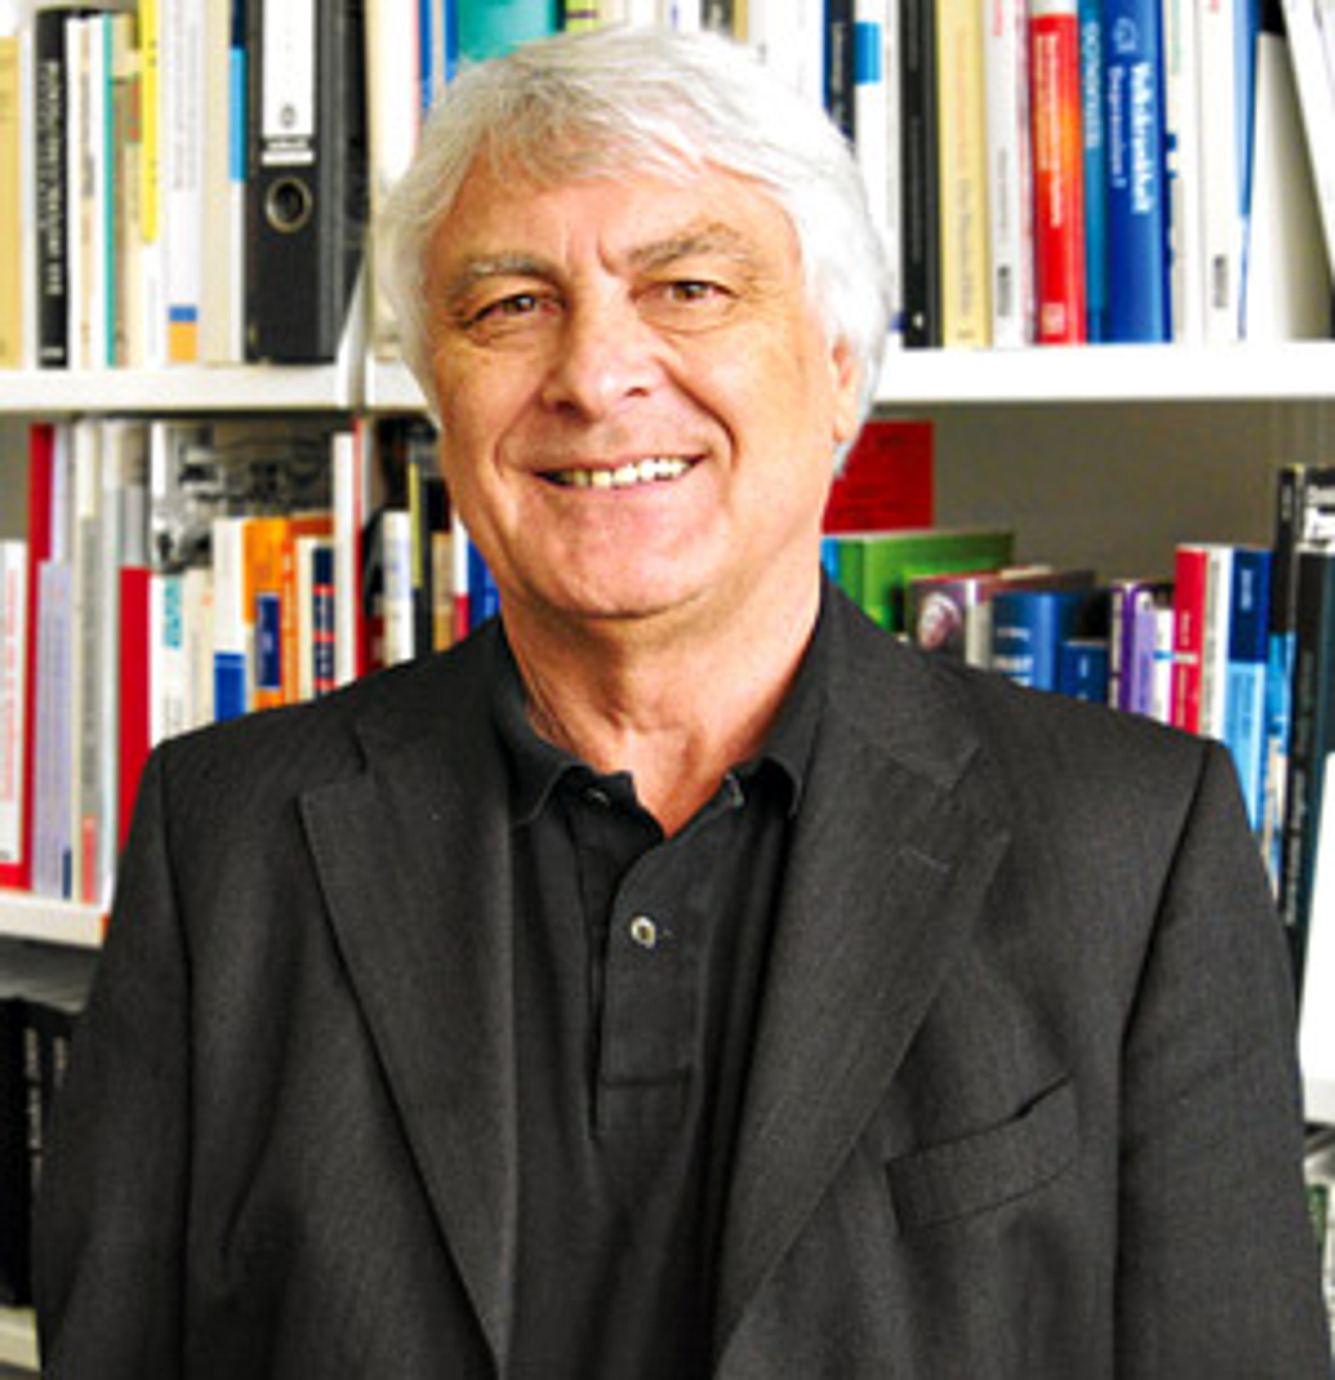 Prof. Dr. Gerd Glaeske leitet die Abteilung Gesundheitsökonomie, Gesundheitspolitik und Versorgungsforschung an der Universität Bremen